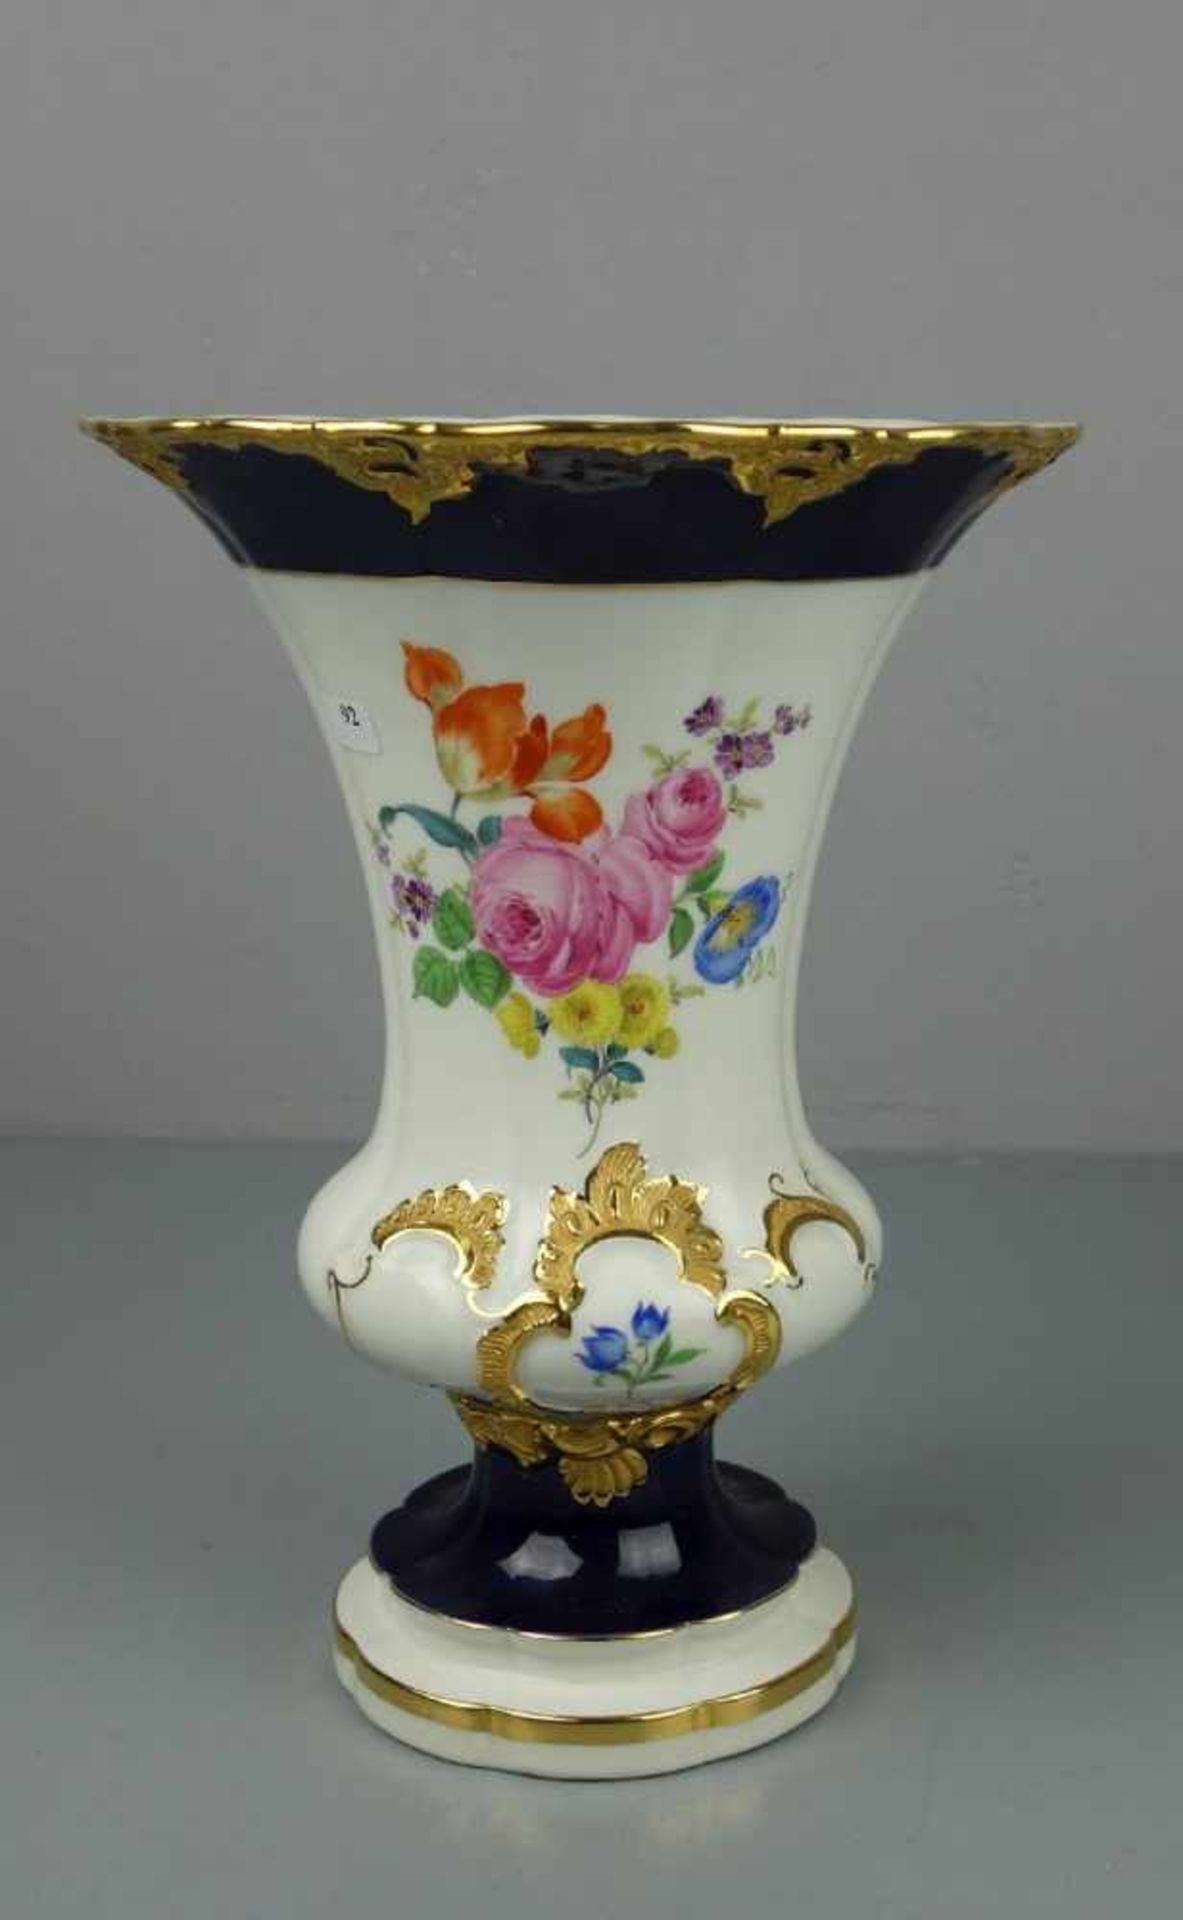 PRUNKVASE, Porzellan Manufaktur Meissen, sogenannte B-Form, Entwurf Ernst August Leuteritz 1860-